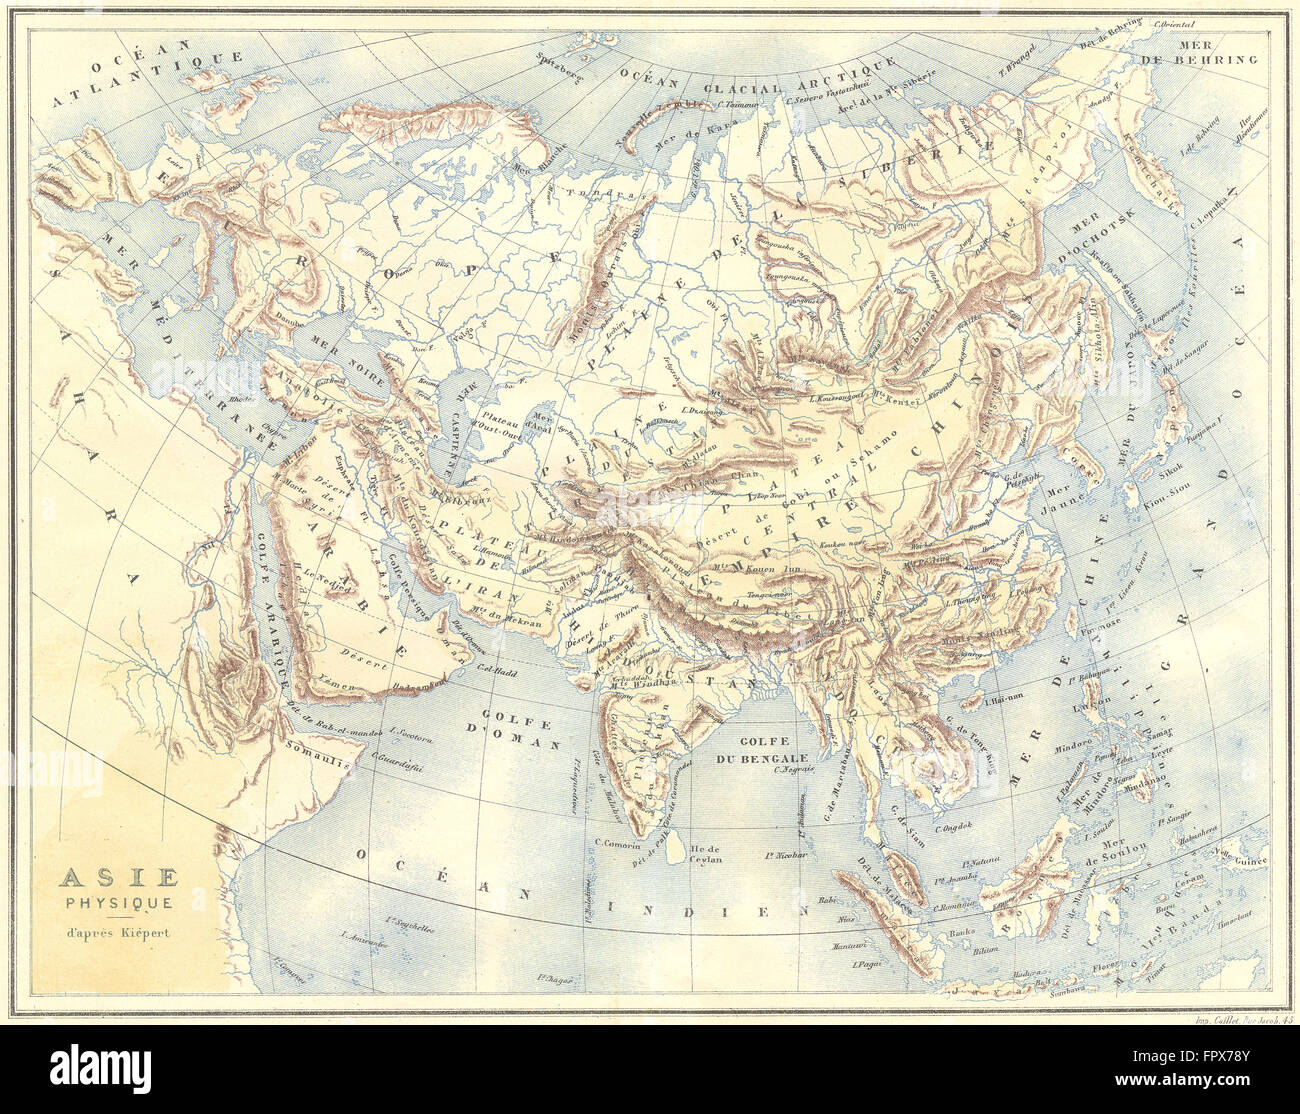 ASIA: Asie Physique d'après Kièpert: Gregoire, 1876 antique map Stock Photo